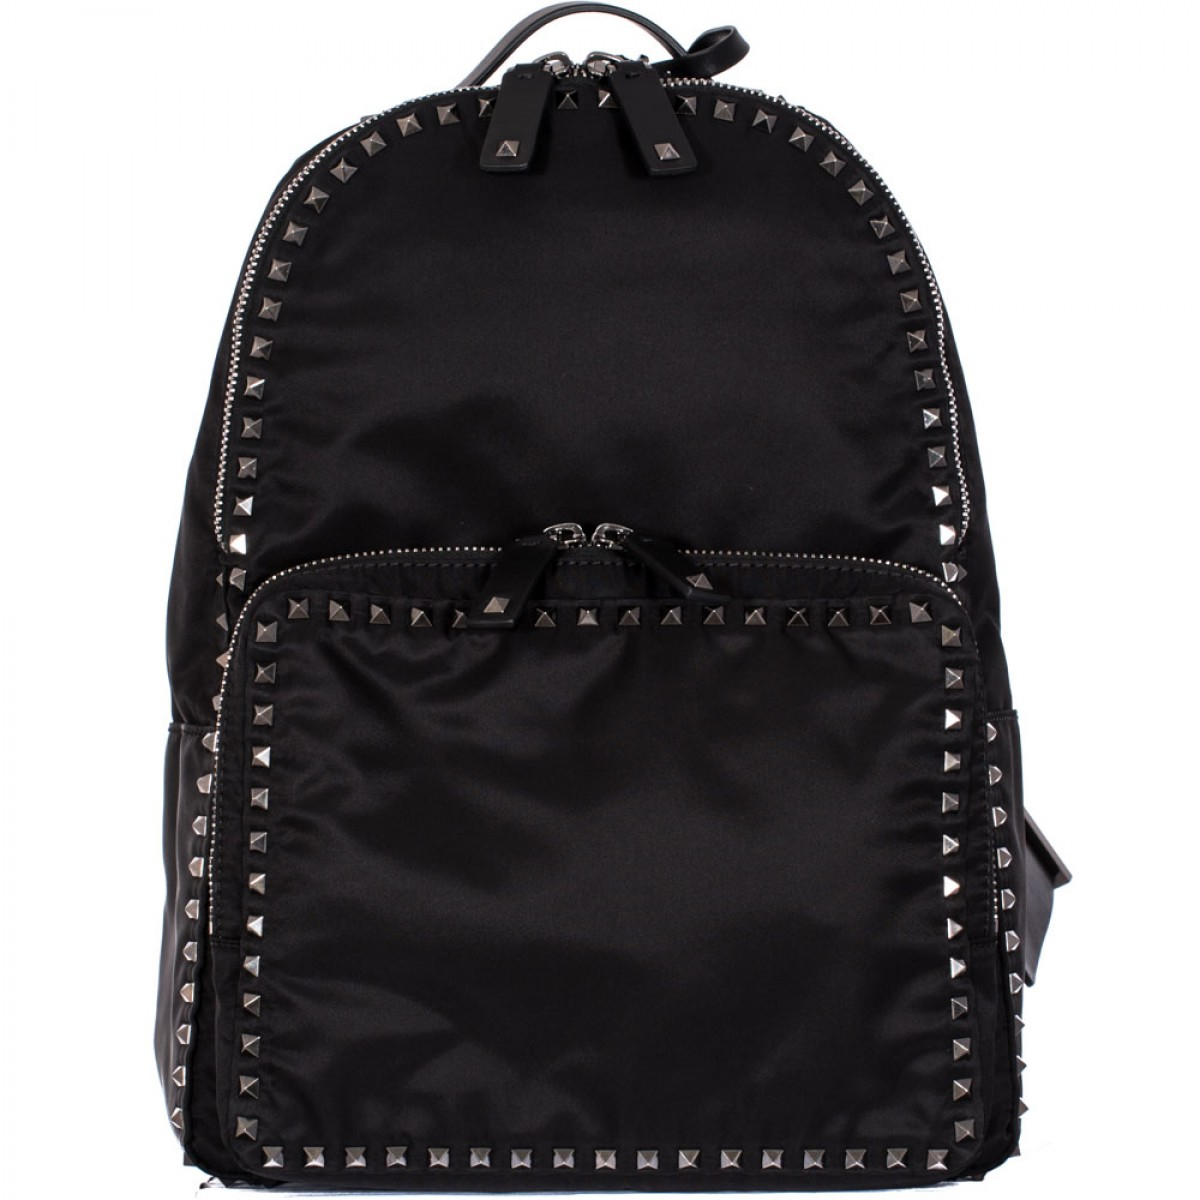 Backpack Nylon Black 51